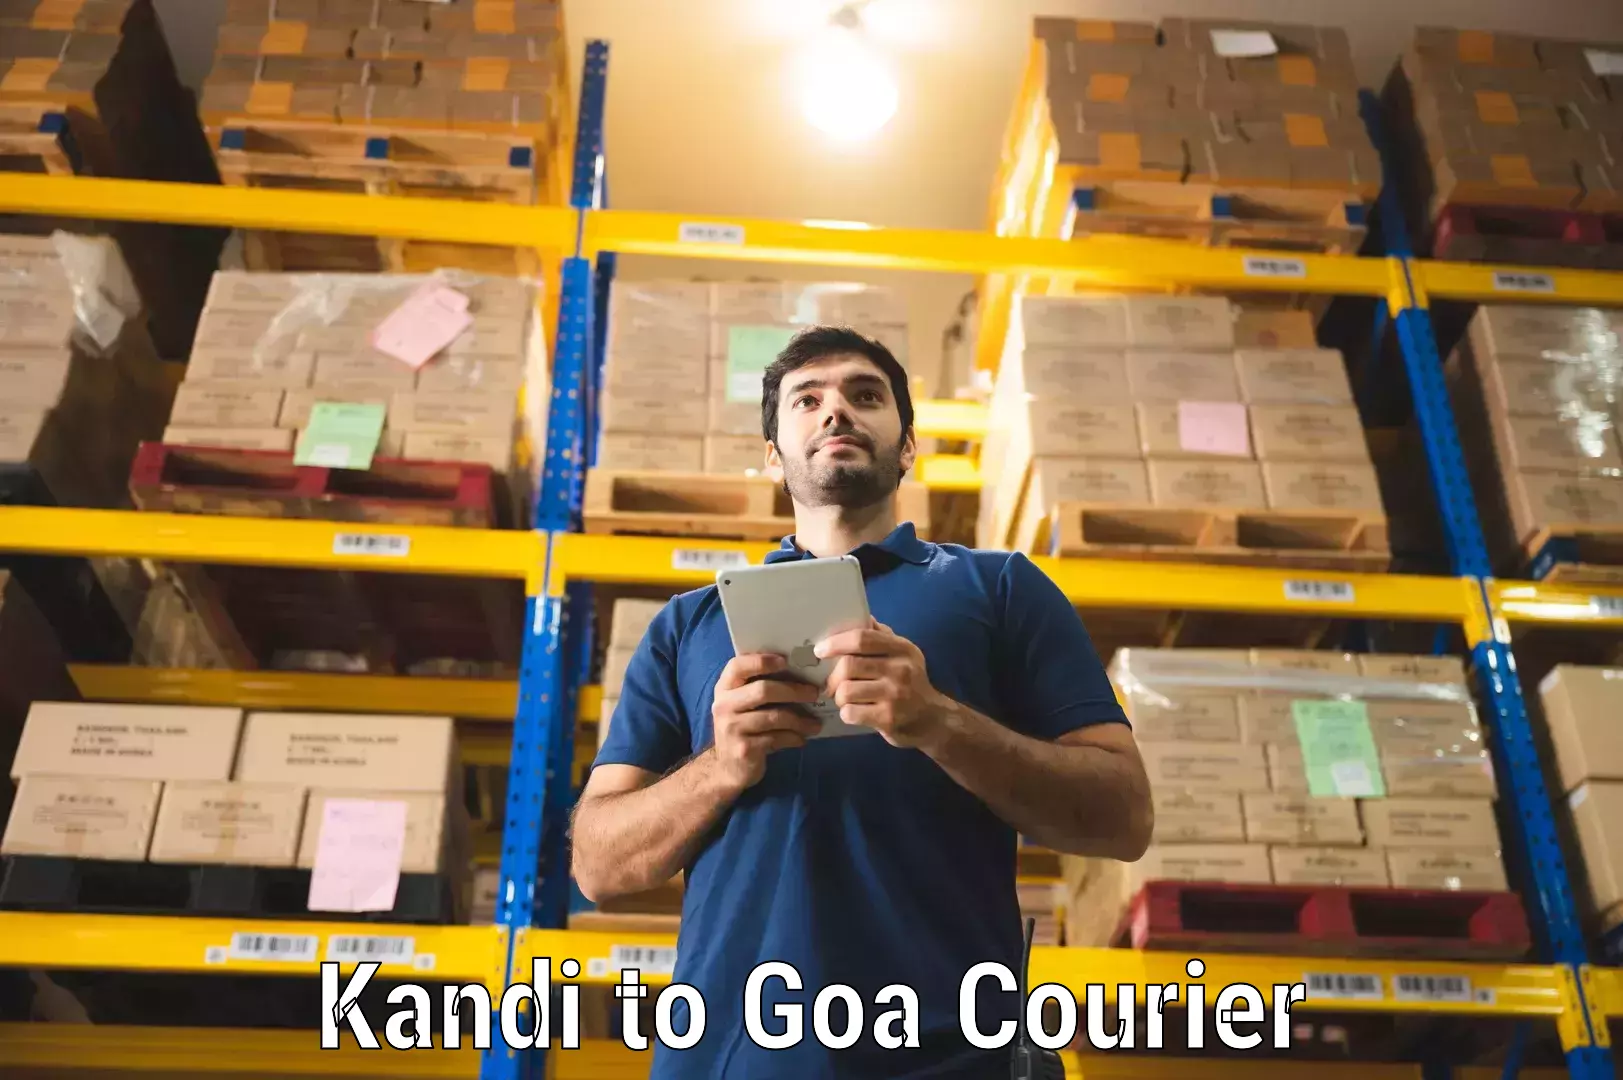 Global freight services Kandi to Goa University